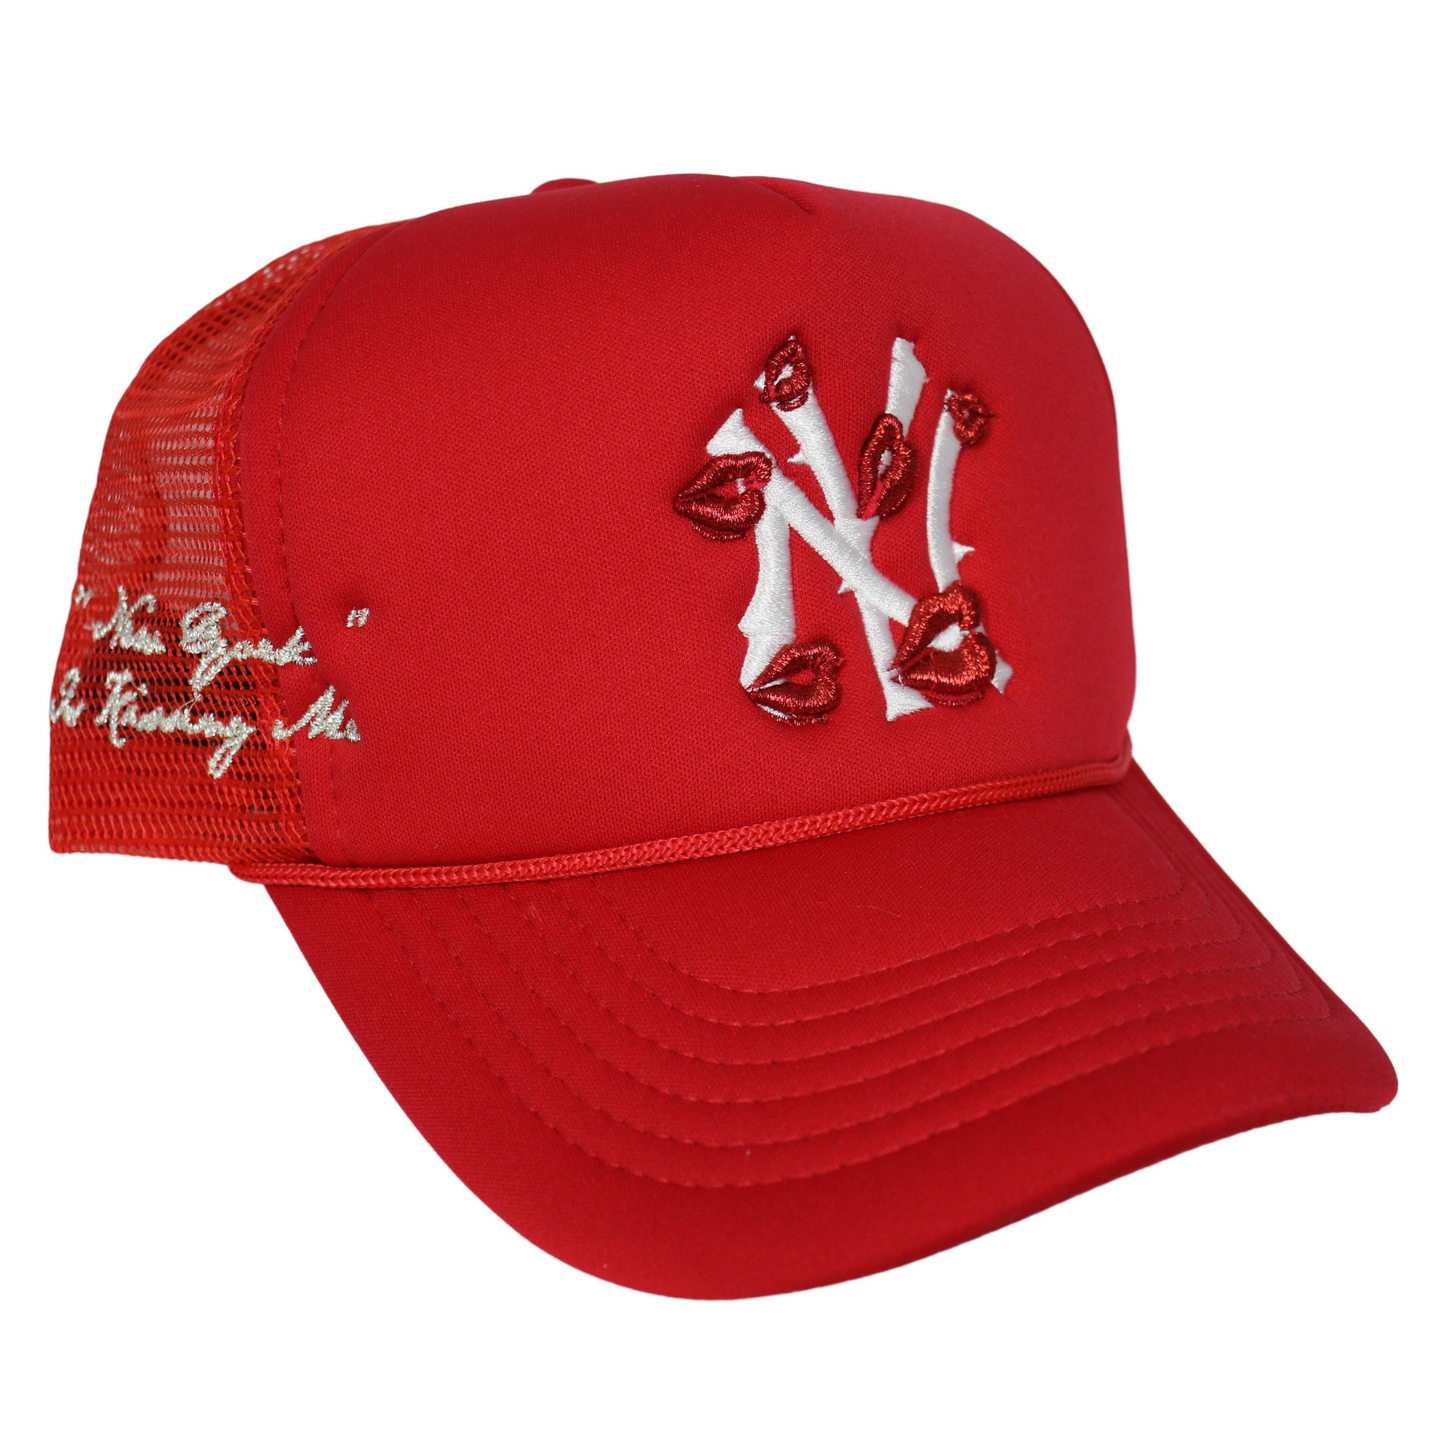 La Ropa NY Trucker Hat (Red)